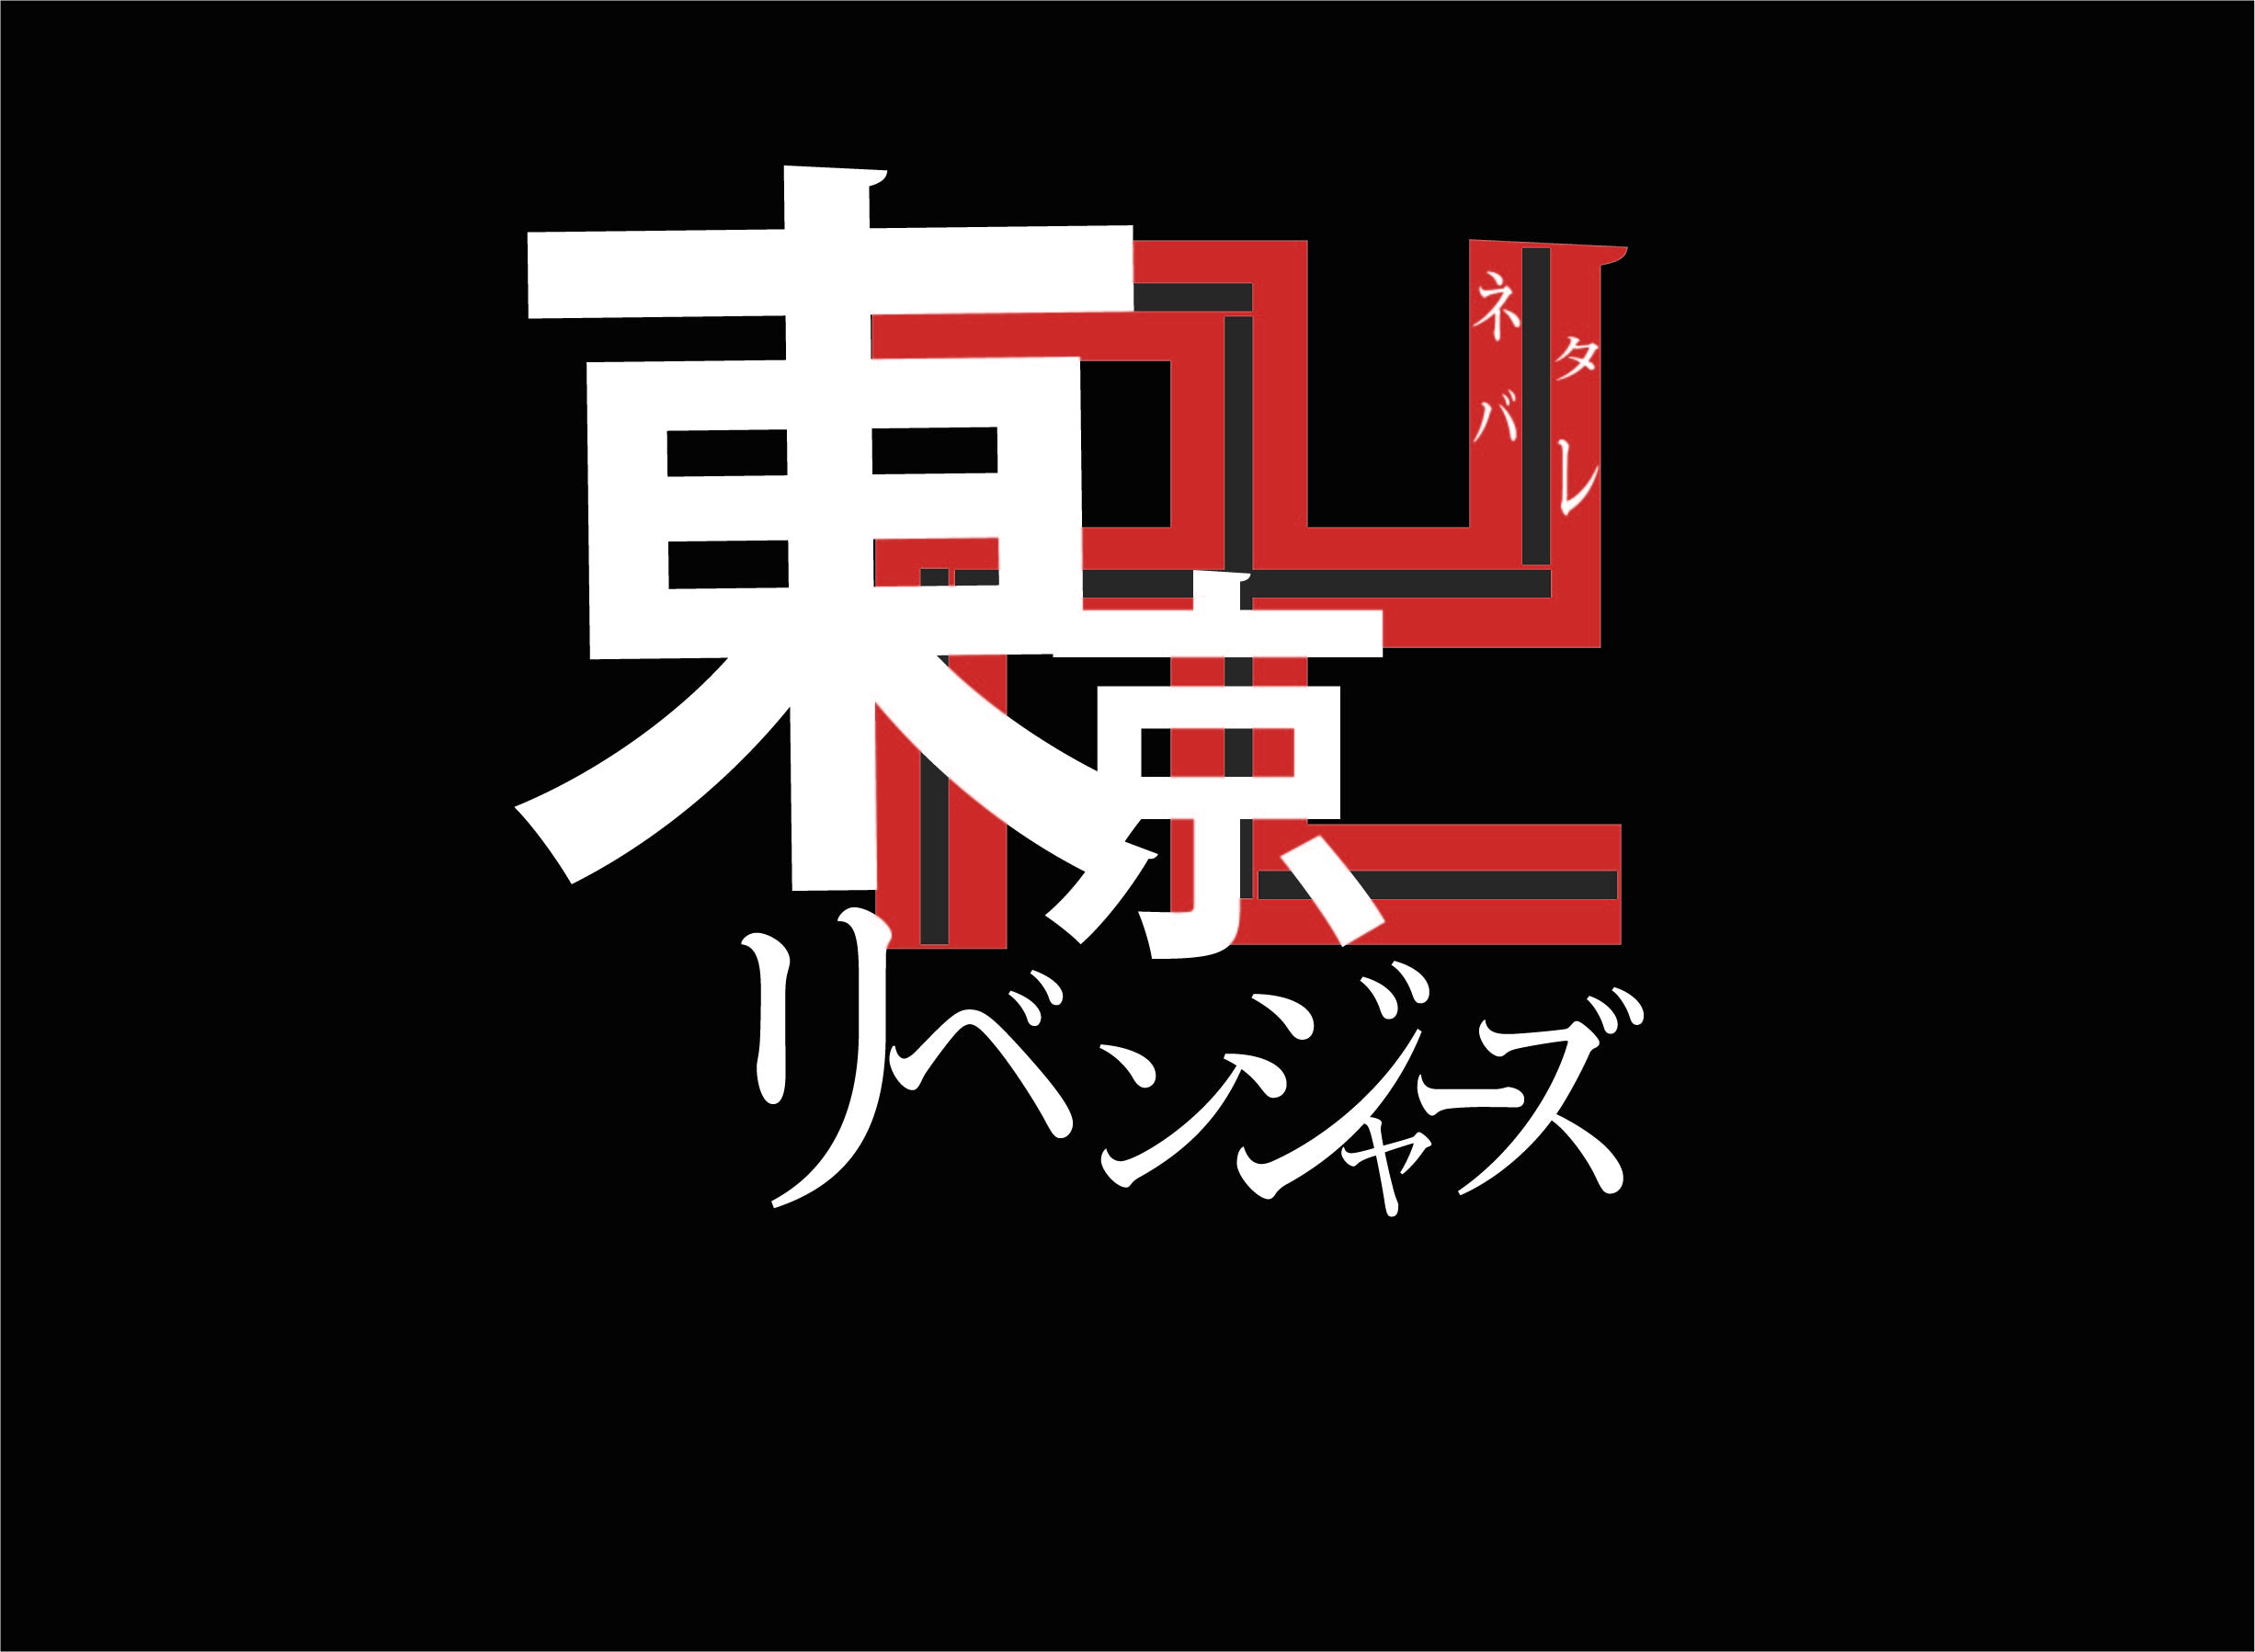 東京卍リベンジャーズ 173話ネタバレ感想 マイキーのマイキーの想いとは 漫画wave